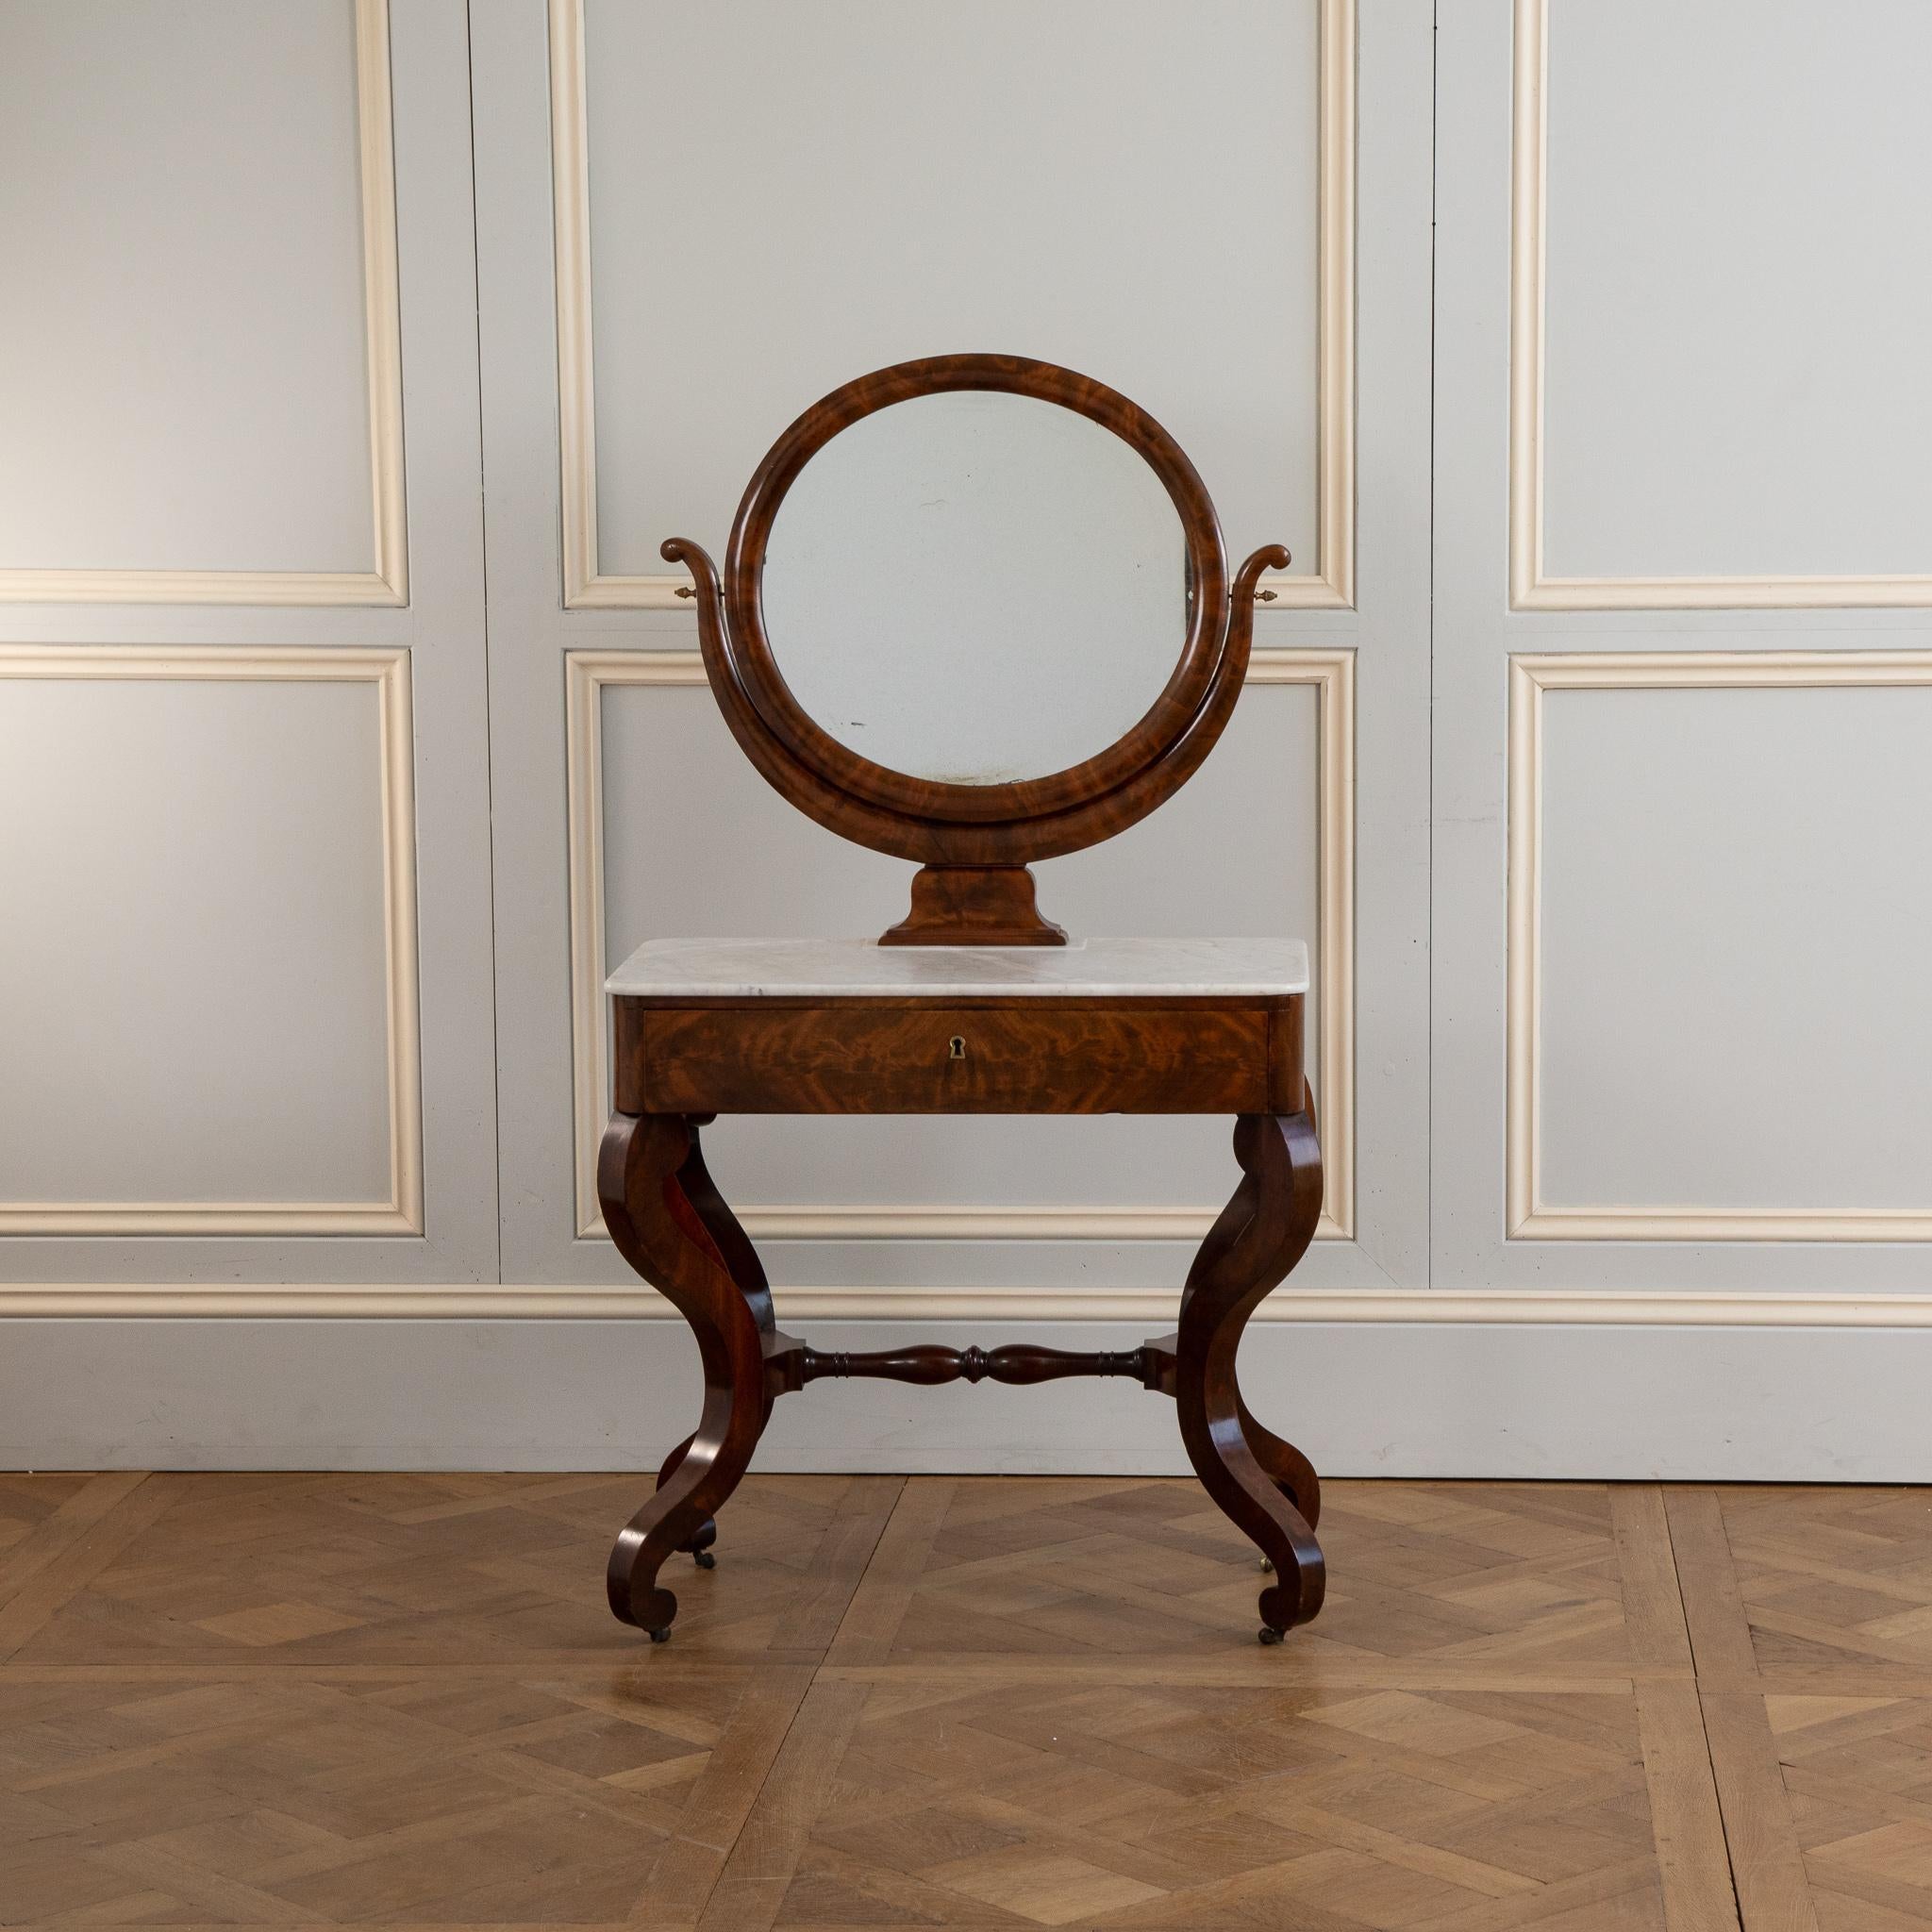 Une très élégante coiffeuse française en acajou de la période de restauration (début du 19ème siècle).
Assis sur 4 pieds galbés 
 a un dessus en marbre avec un miroir de Psyché.
le tiroir a un dessus en cuir qui était utilisé comme table